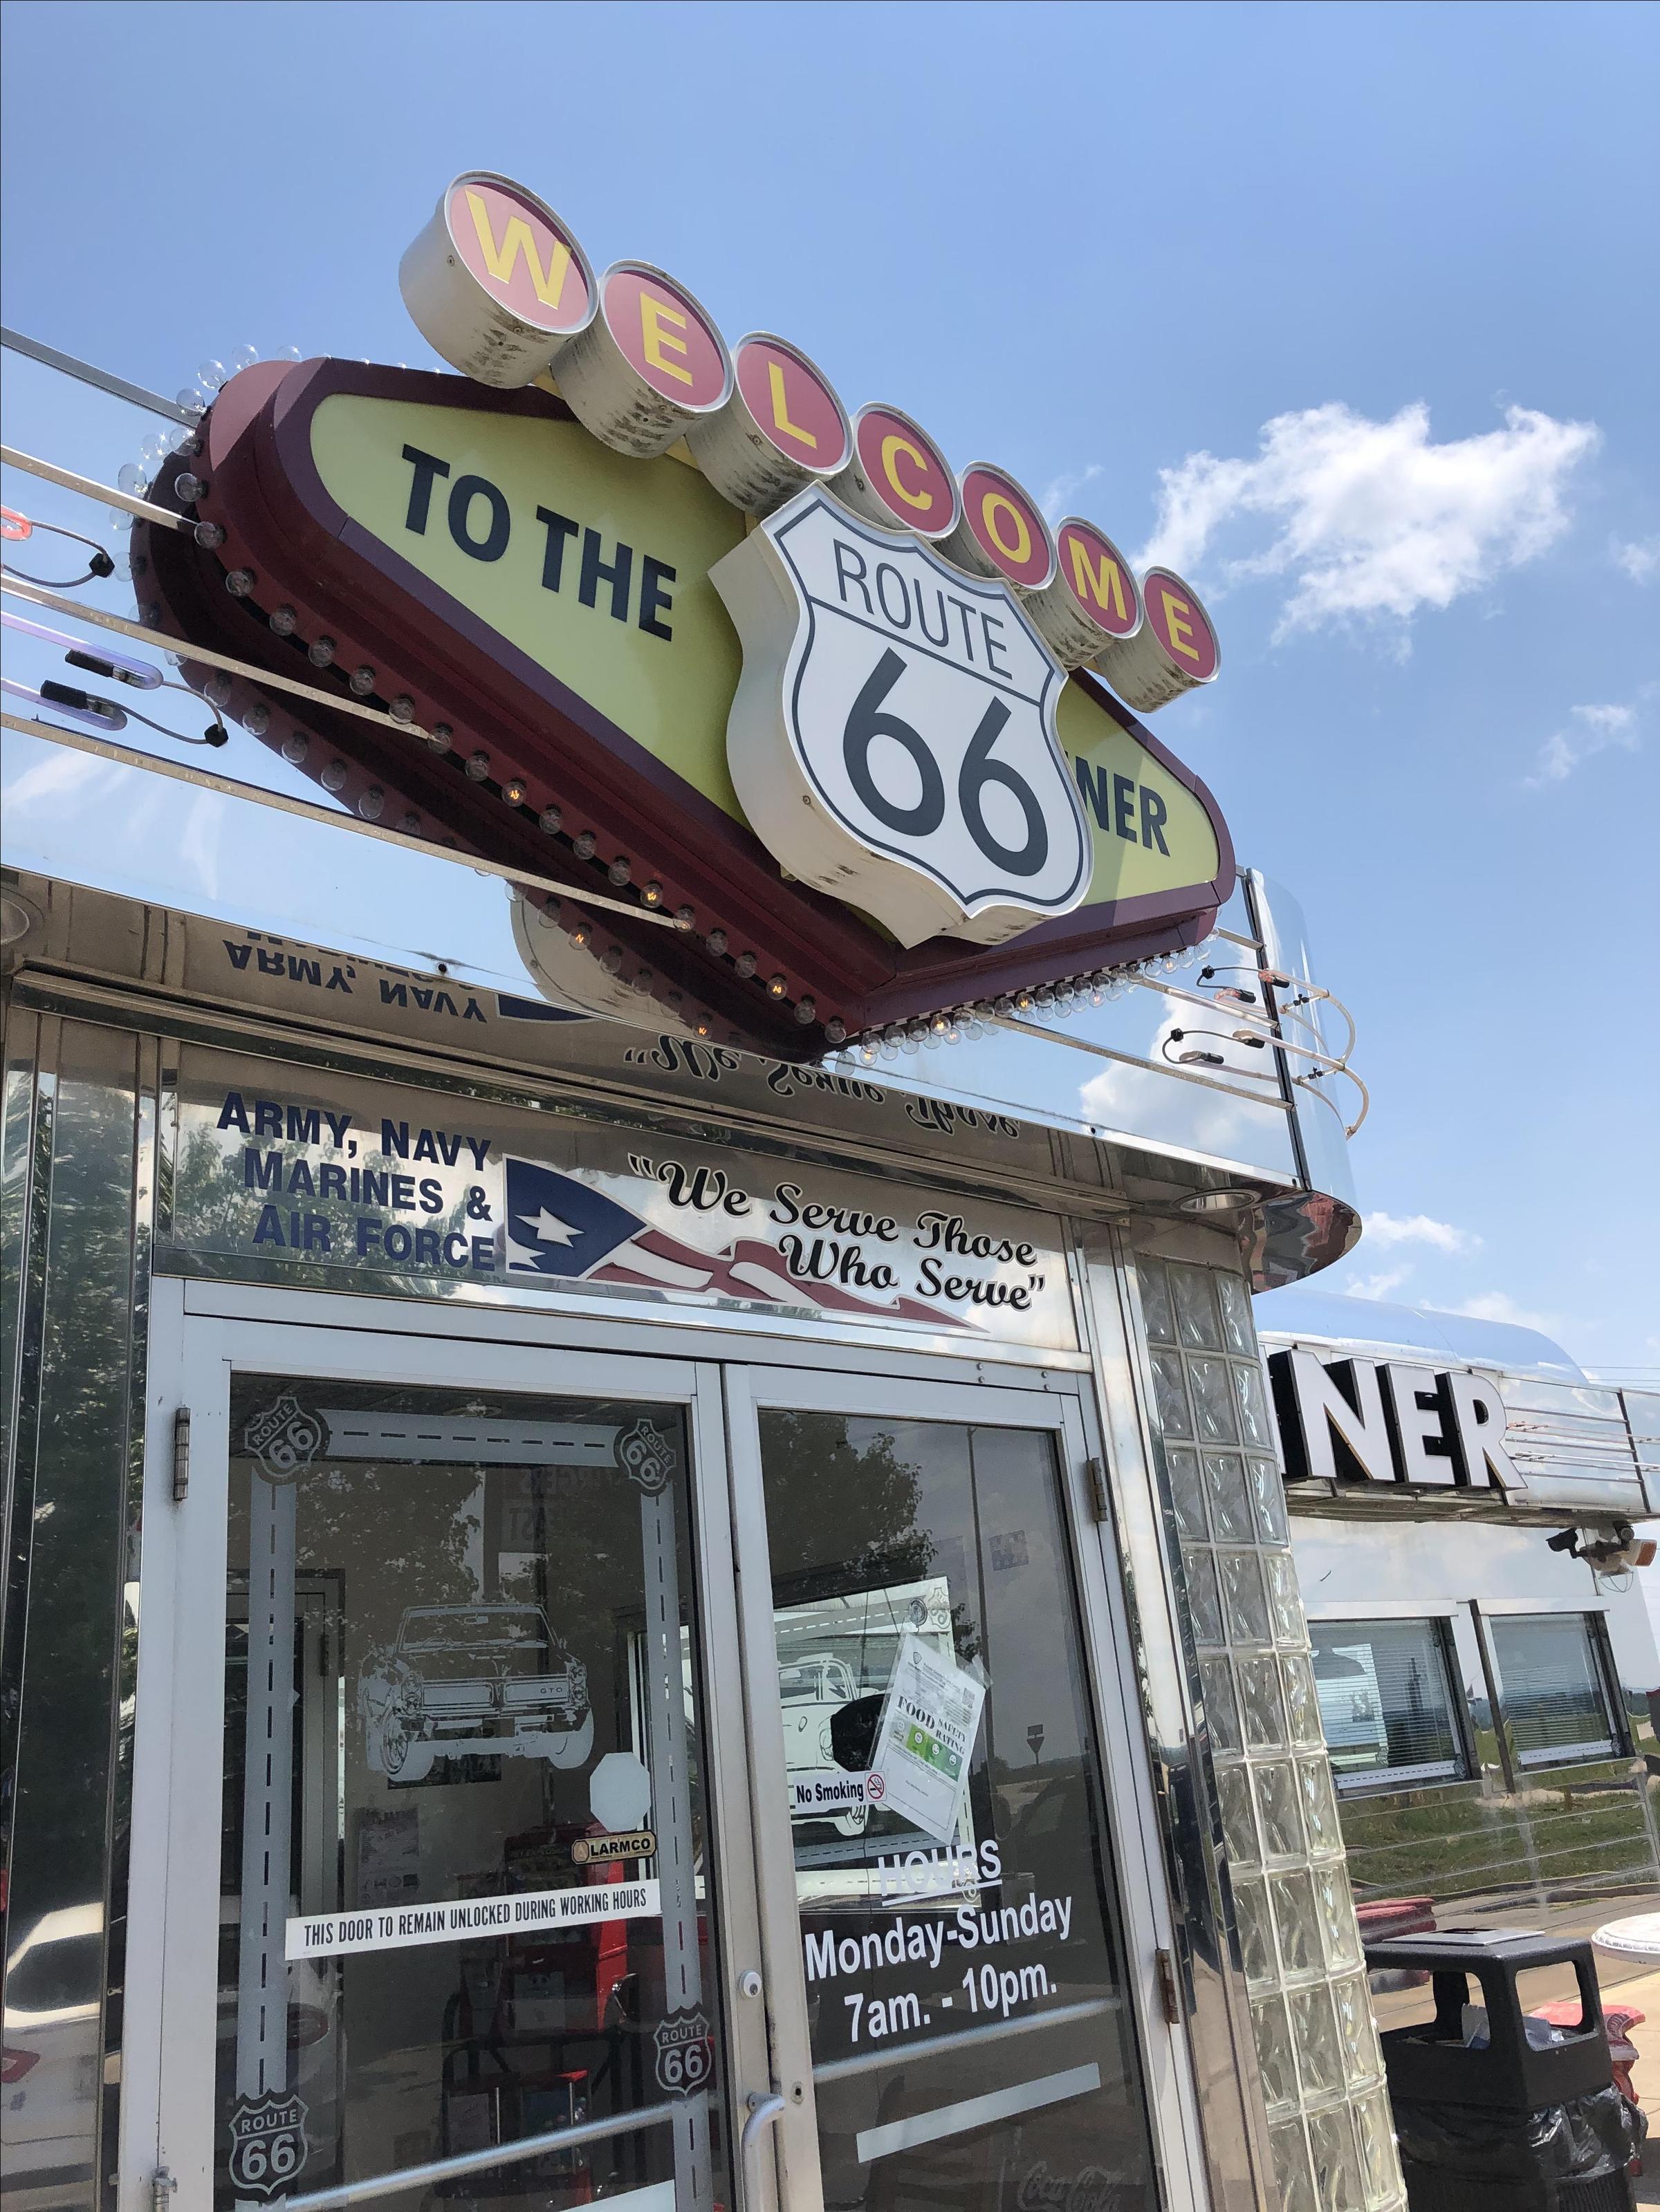 Pet Friendly Route 66 Diner